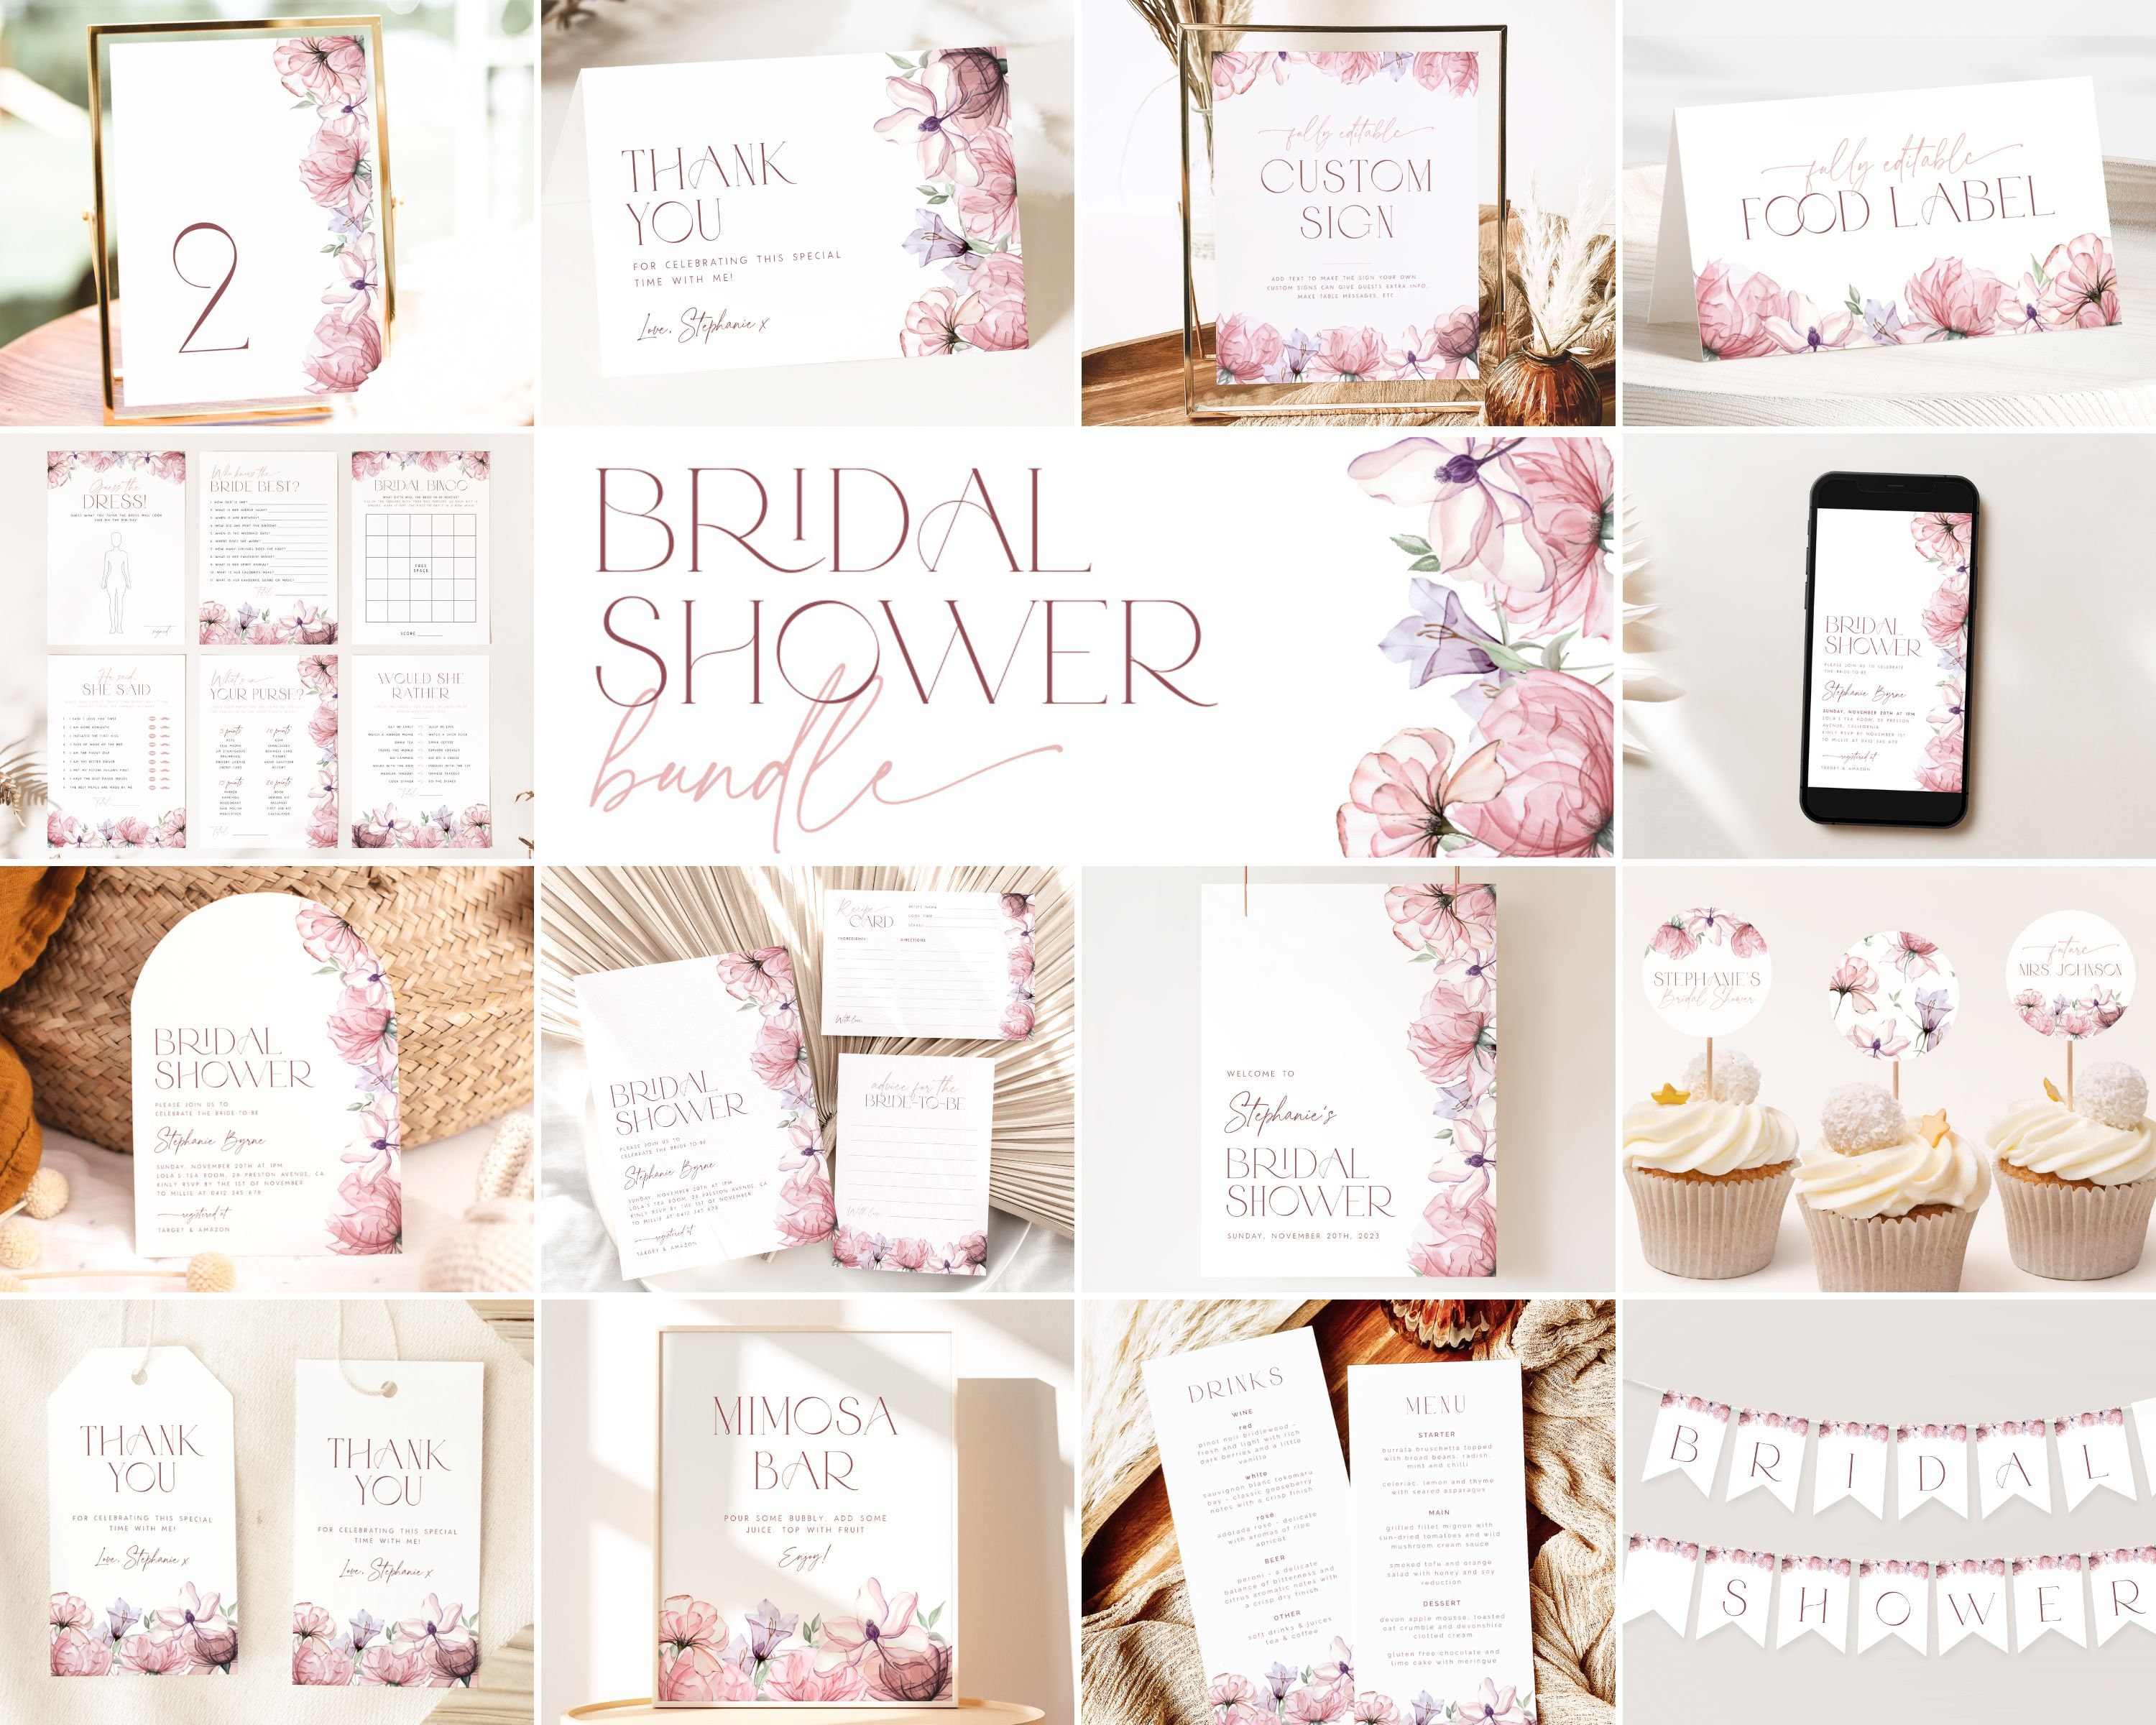 Blush Pink Bridal Shower Bundle: Bộ sưu tập Blush Pink Bridal Shower Bundle với họa tiết hoa lá delicate và màu hồng nhạt tinh tế sẽ là lựa chọn hoàn hảo cho một buổi tiệc pre-wedding ngọt ngào đầy lãng mạn. Hãy cùng xem hình ảnh để tìm hiểu thêm về bộ sưu tập này và chuẩn bị cho bữa tiệc tuyệt vời nhất!